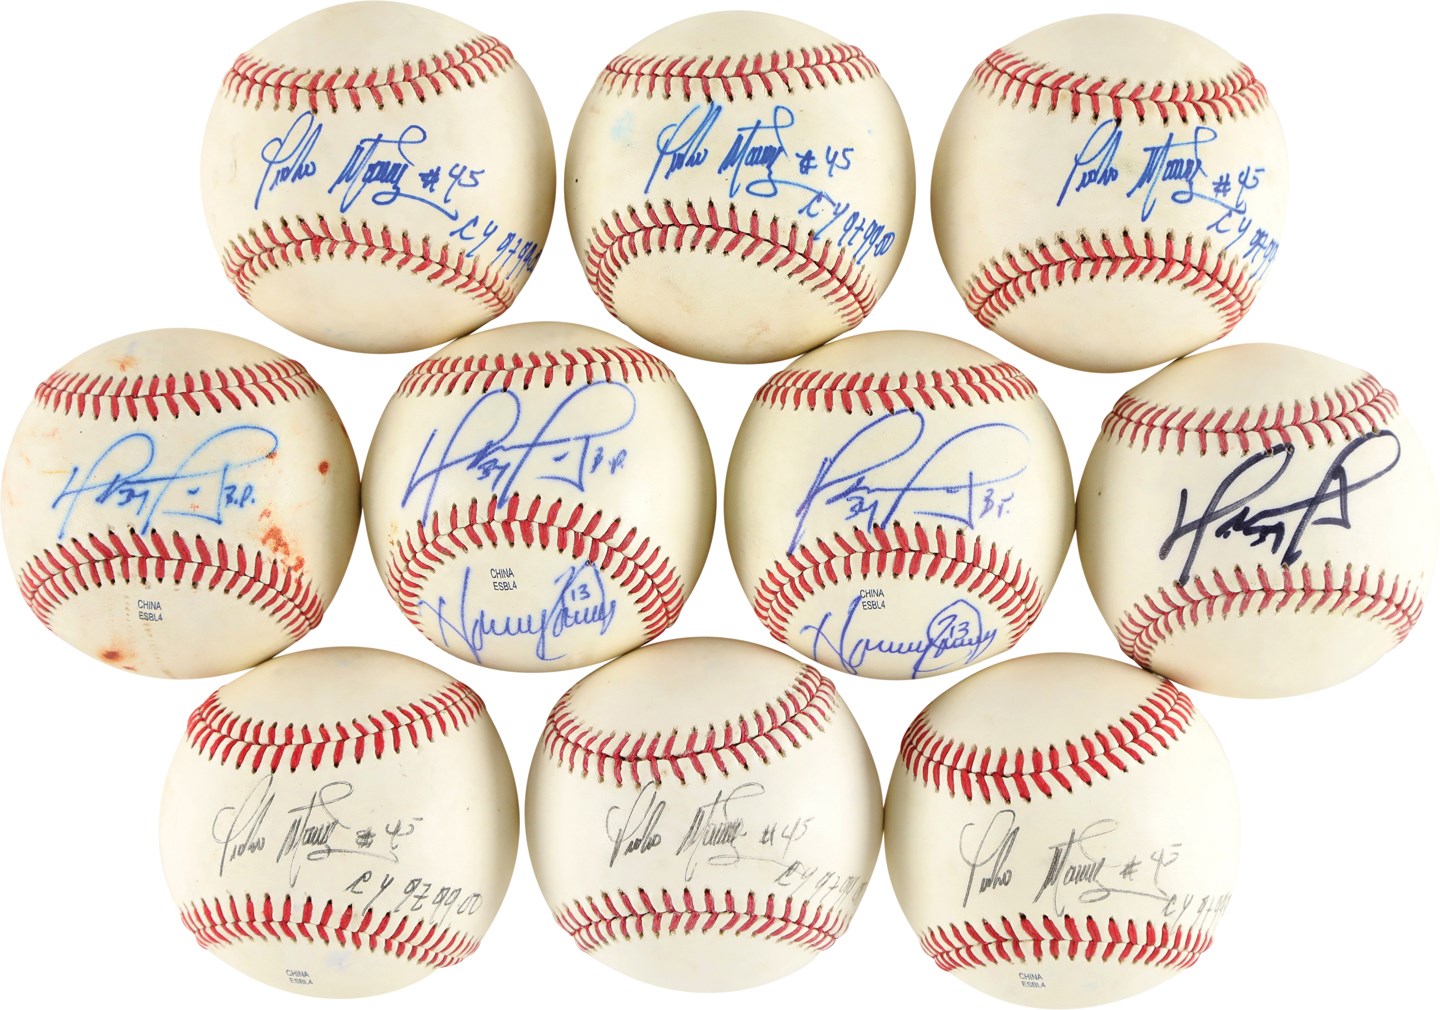 Baseball Autographs - Pedro Martinez and David Ortiz Signed Baseballs (24)